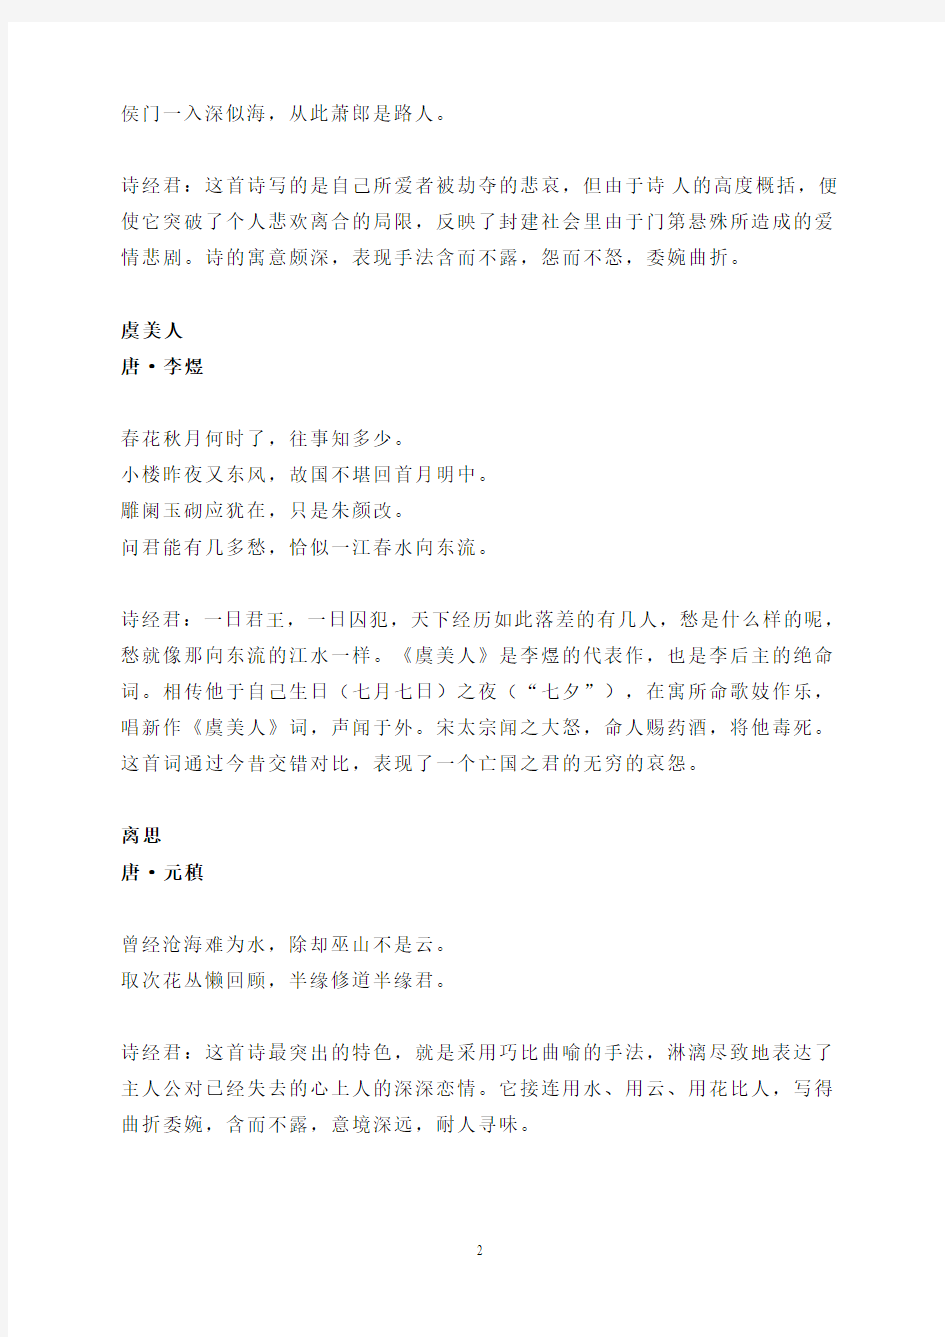 中国古诗史上最唯美、最断肠的七首诗词!